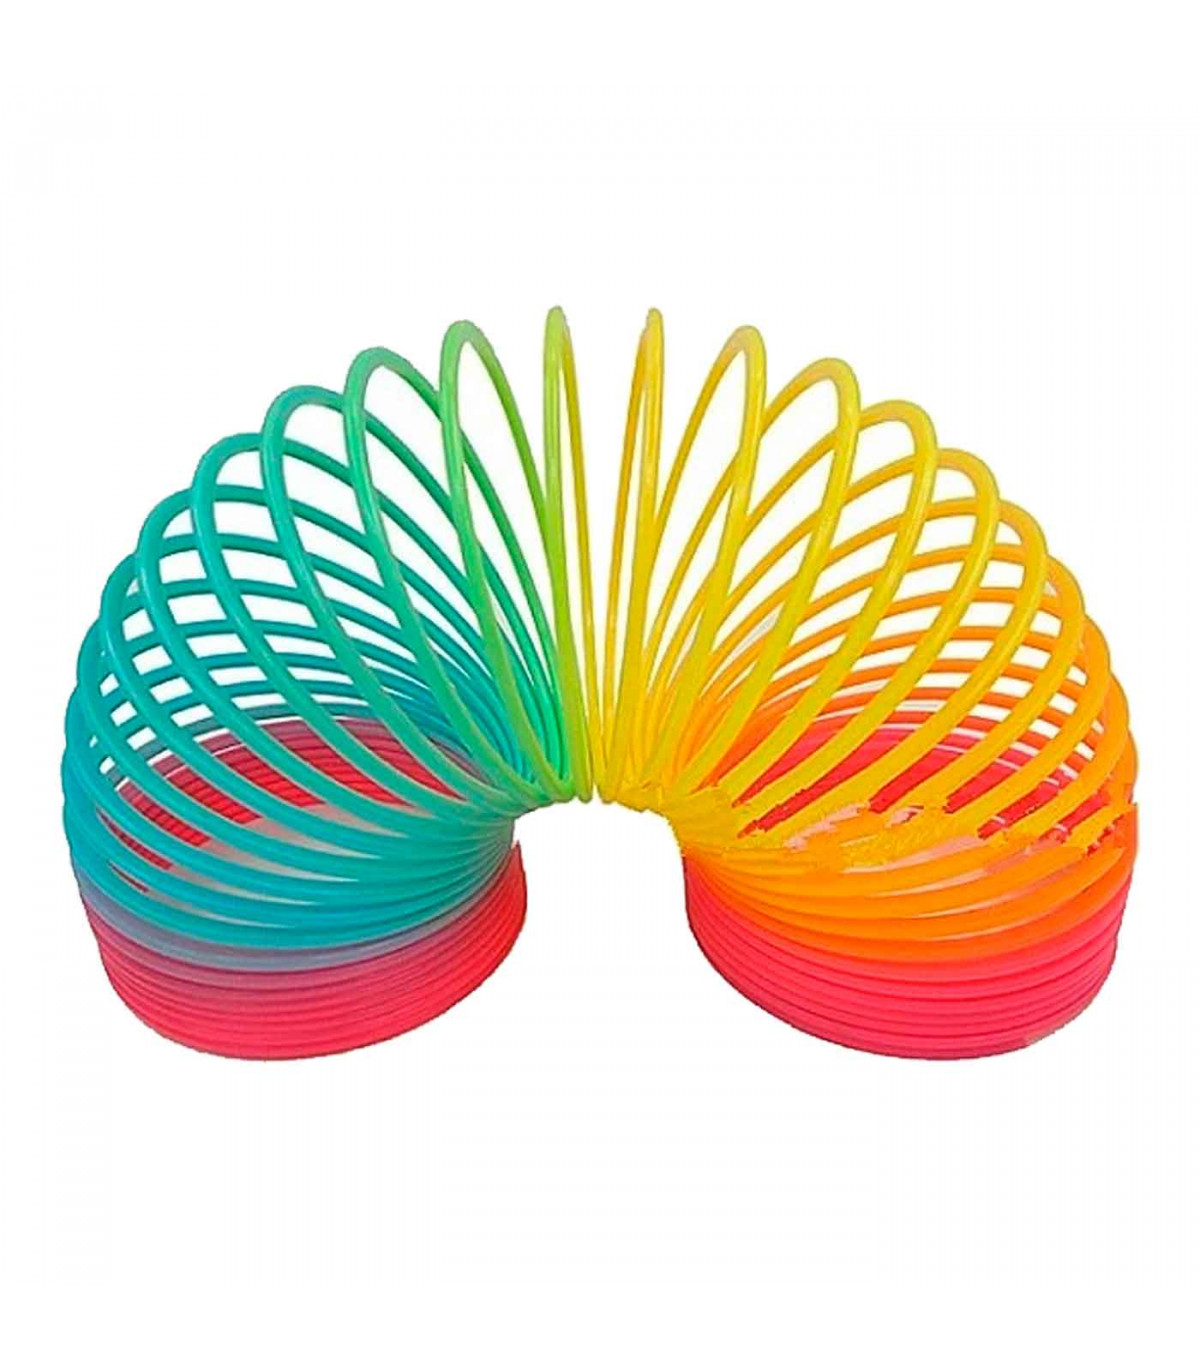 Tradineur - Muelle Arcoiris espiral - Fabricado en Plástico - Perfecto para  que los niños jueguen en interiores o exteriores - M